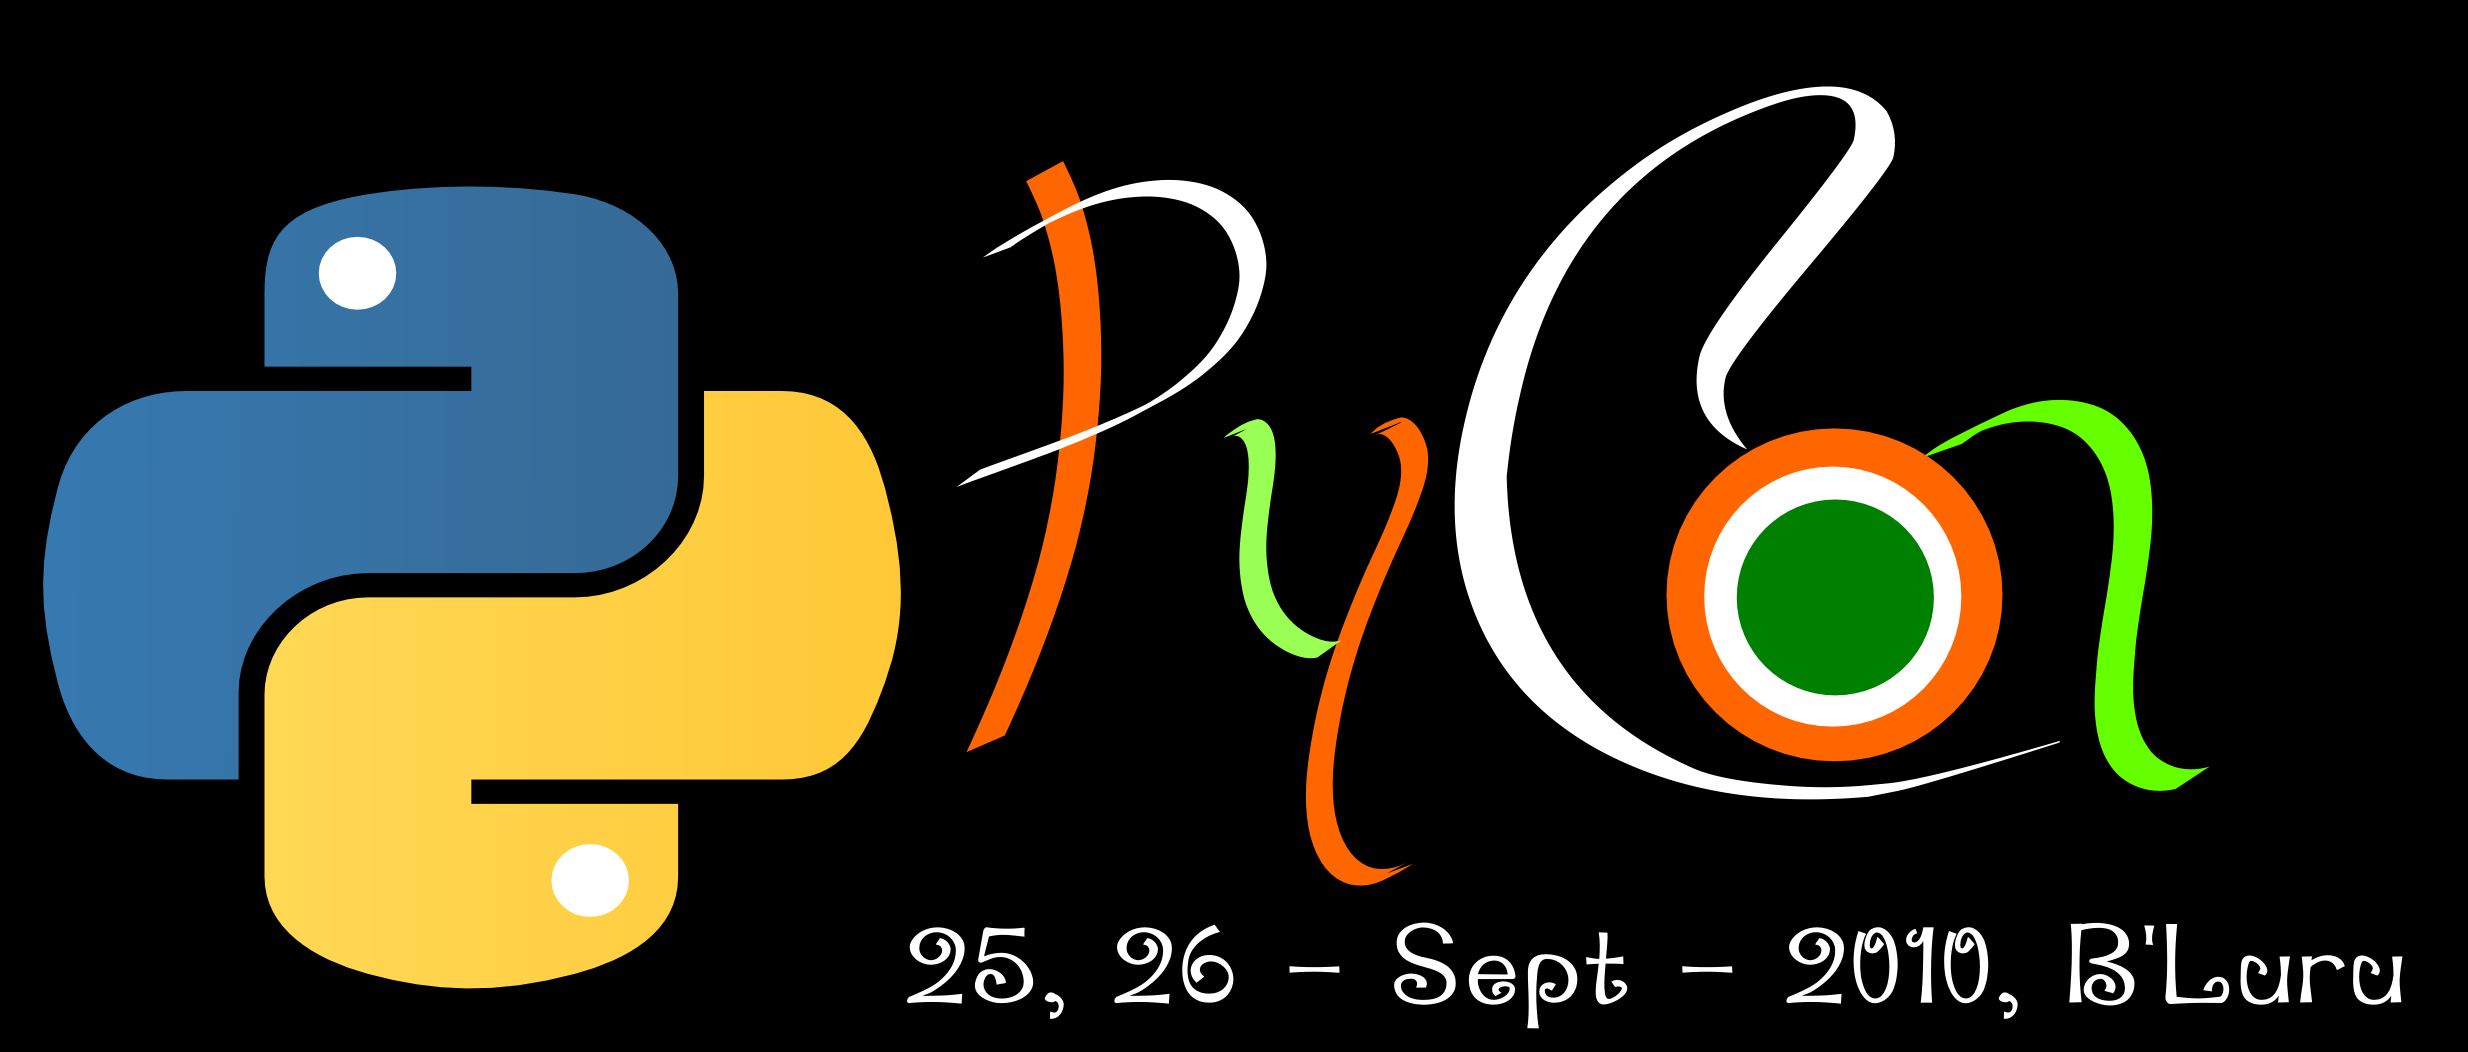 inpycon-2010-logo.png